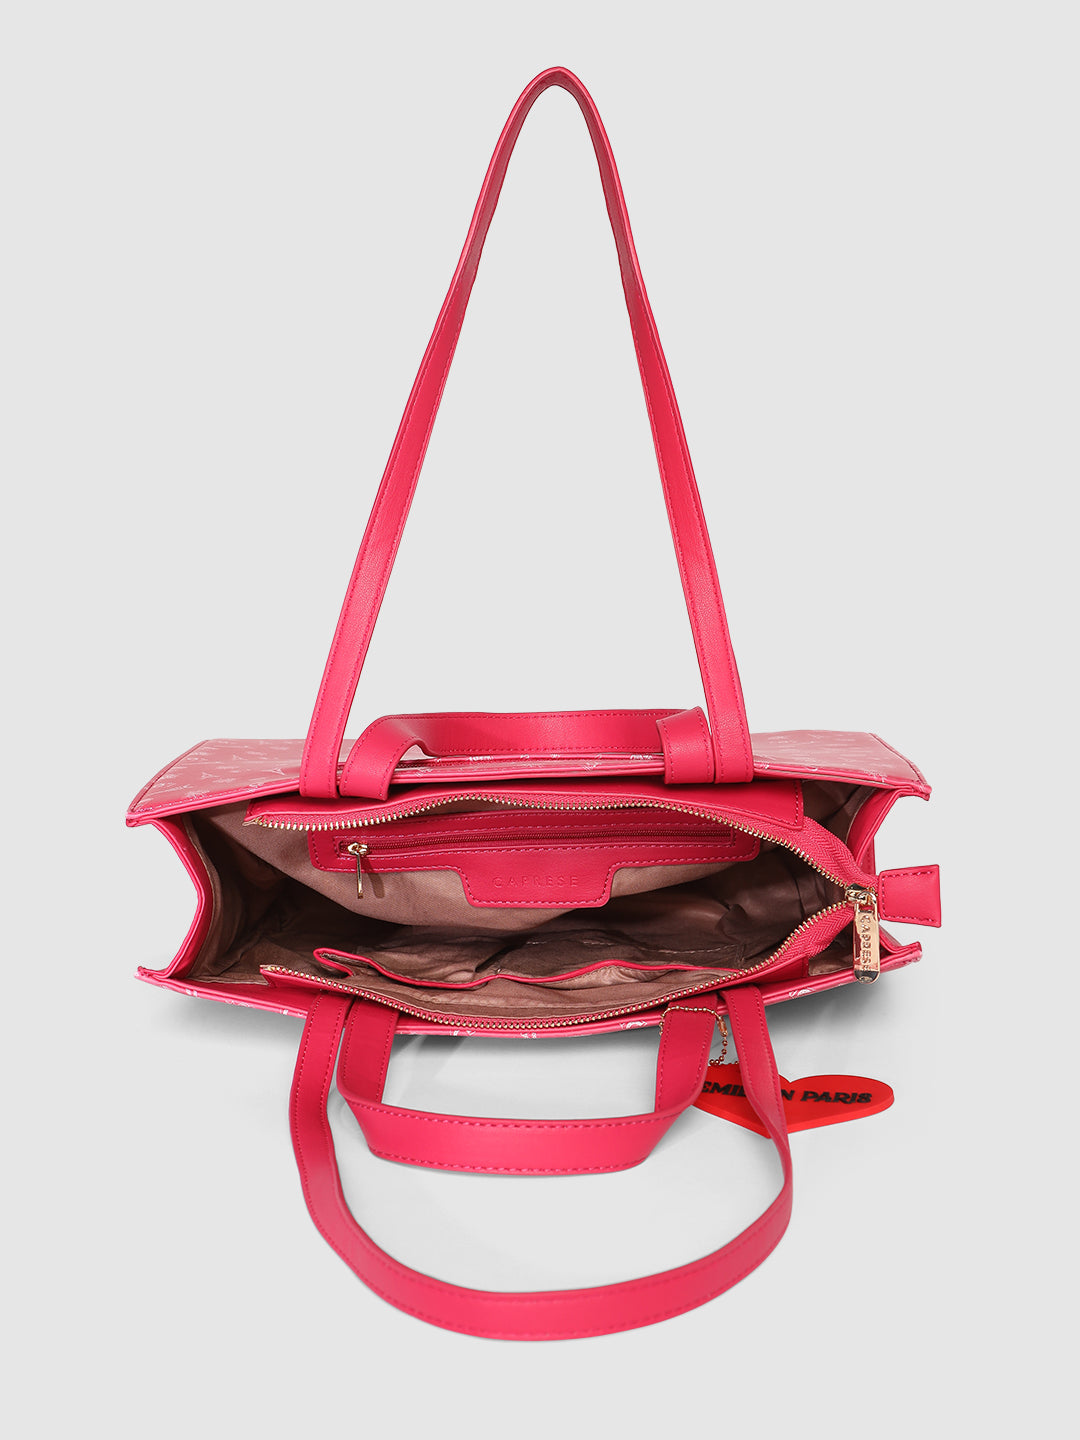 Caprese Emily in Paris Printed Tote Handbag – Caprese Bags